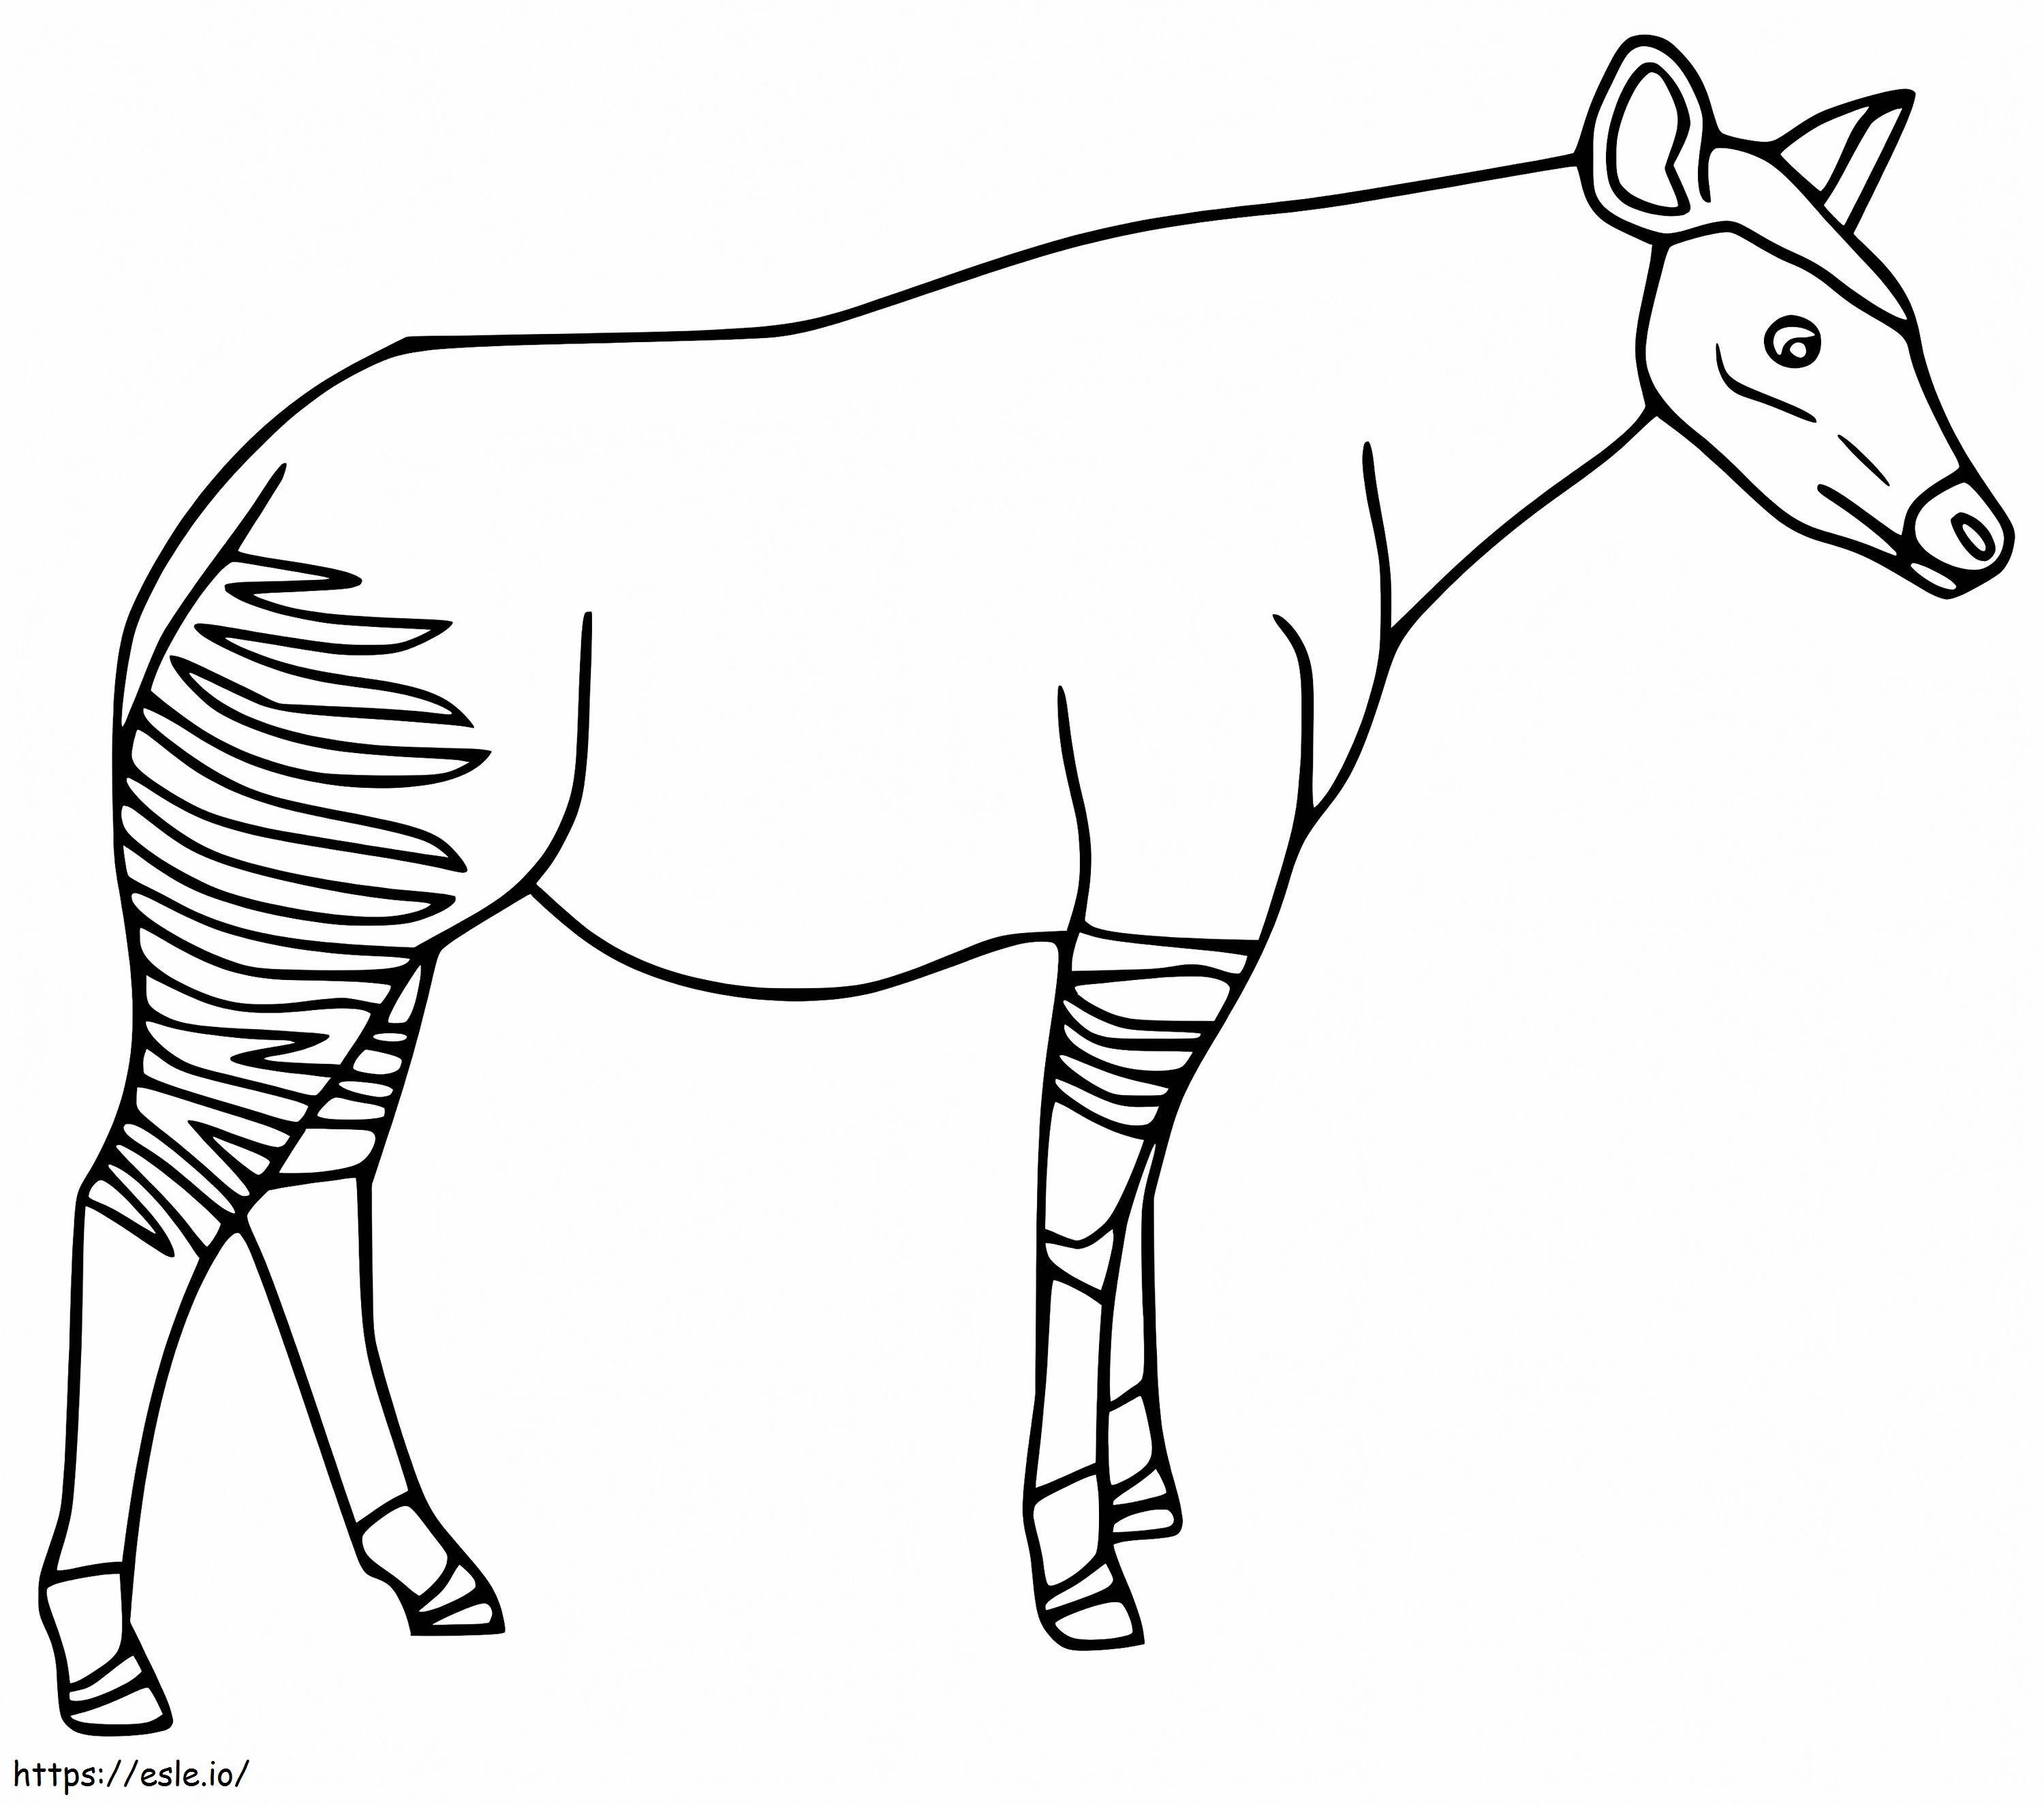 Ücretsiz Yazdırılabilir Okapi boyama